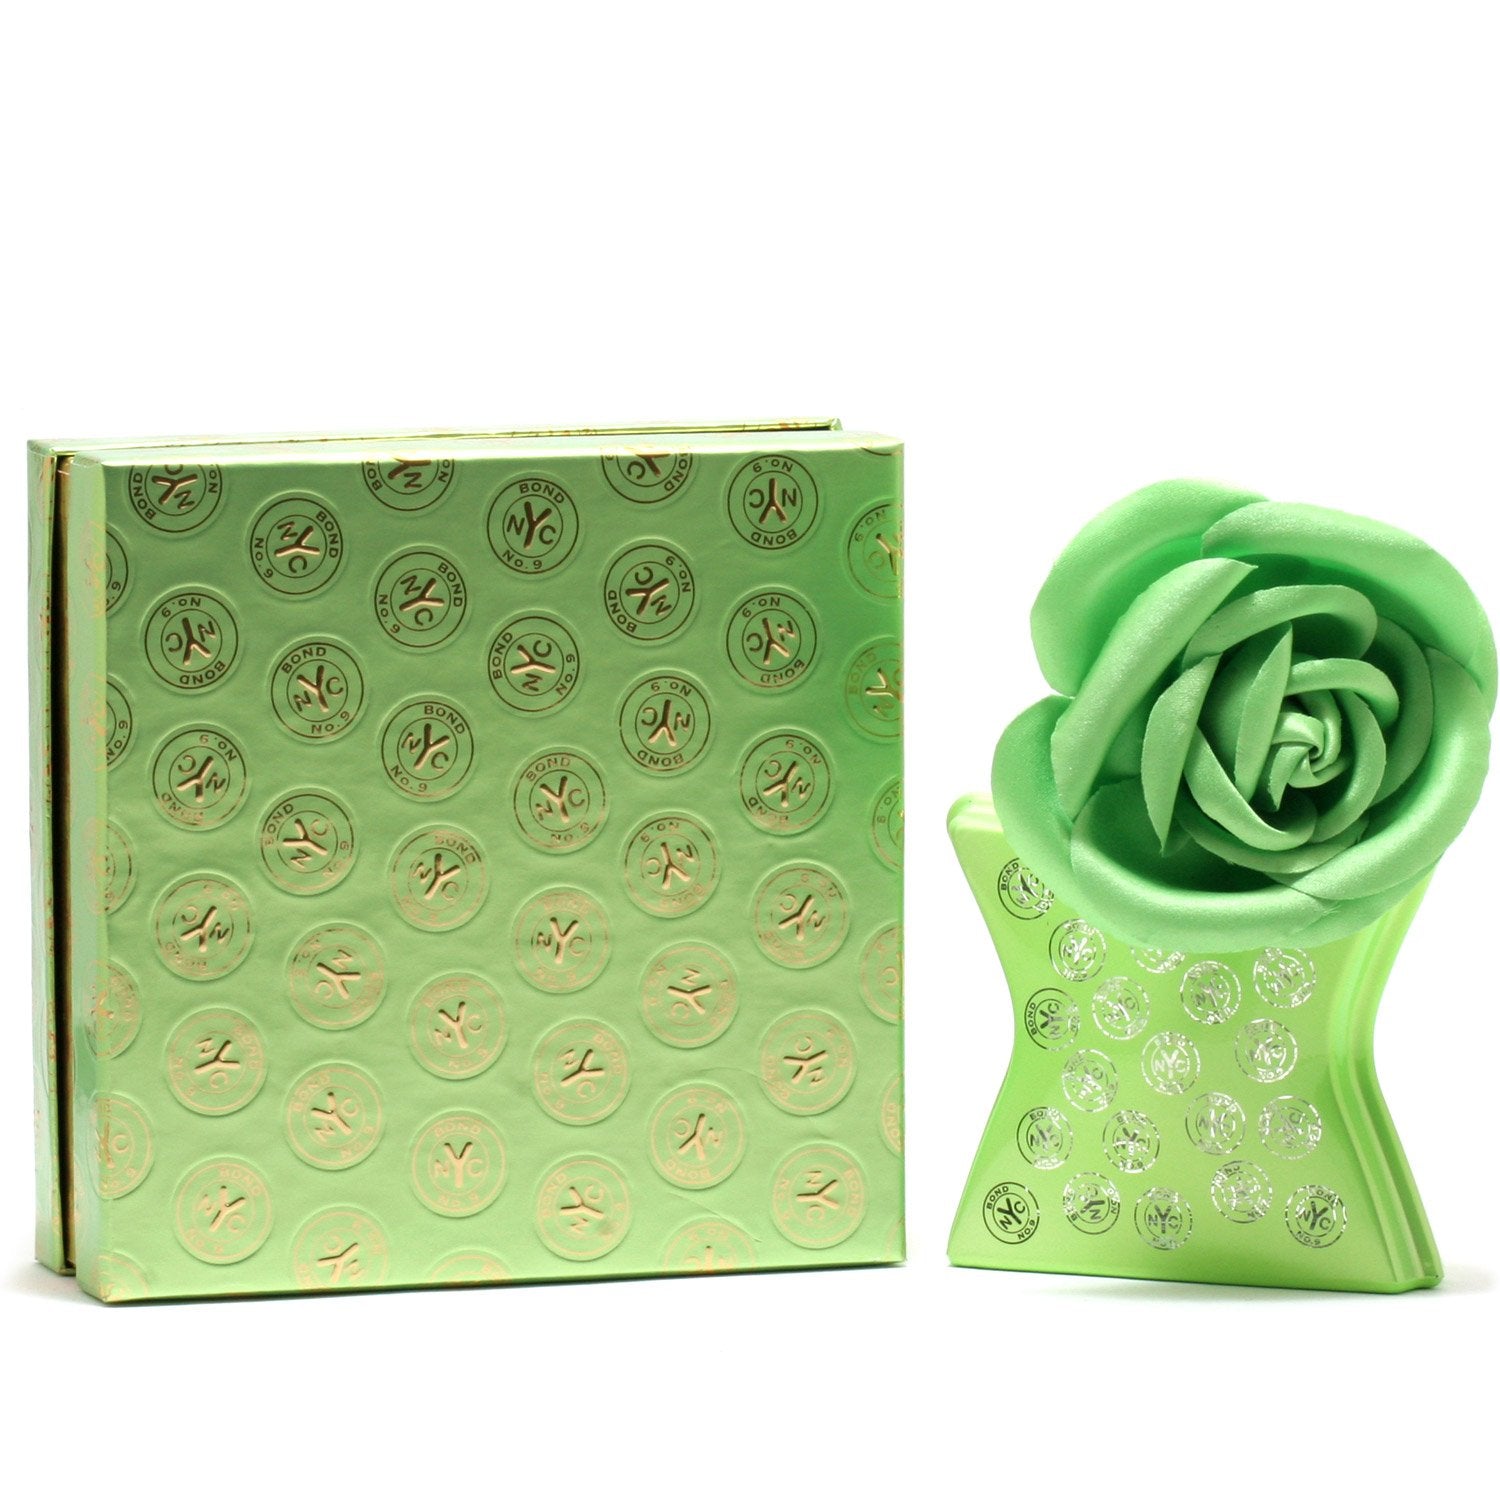 Perfume - BOND NO 9 HUDSON YARDS FOR WOMEN - EAU DE PARFUM SPRAY, 3.4 OZ